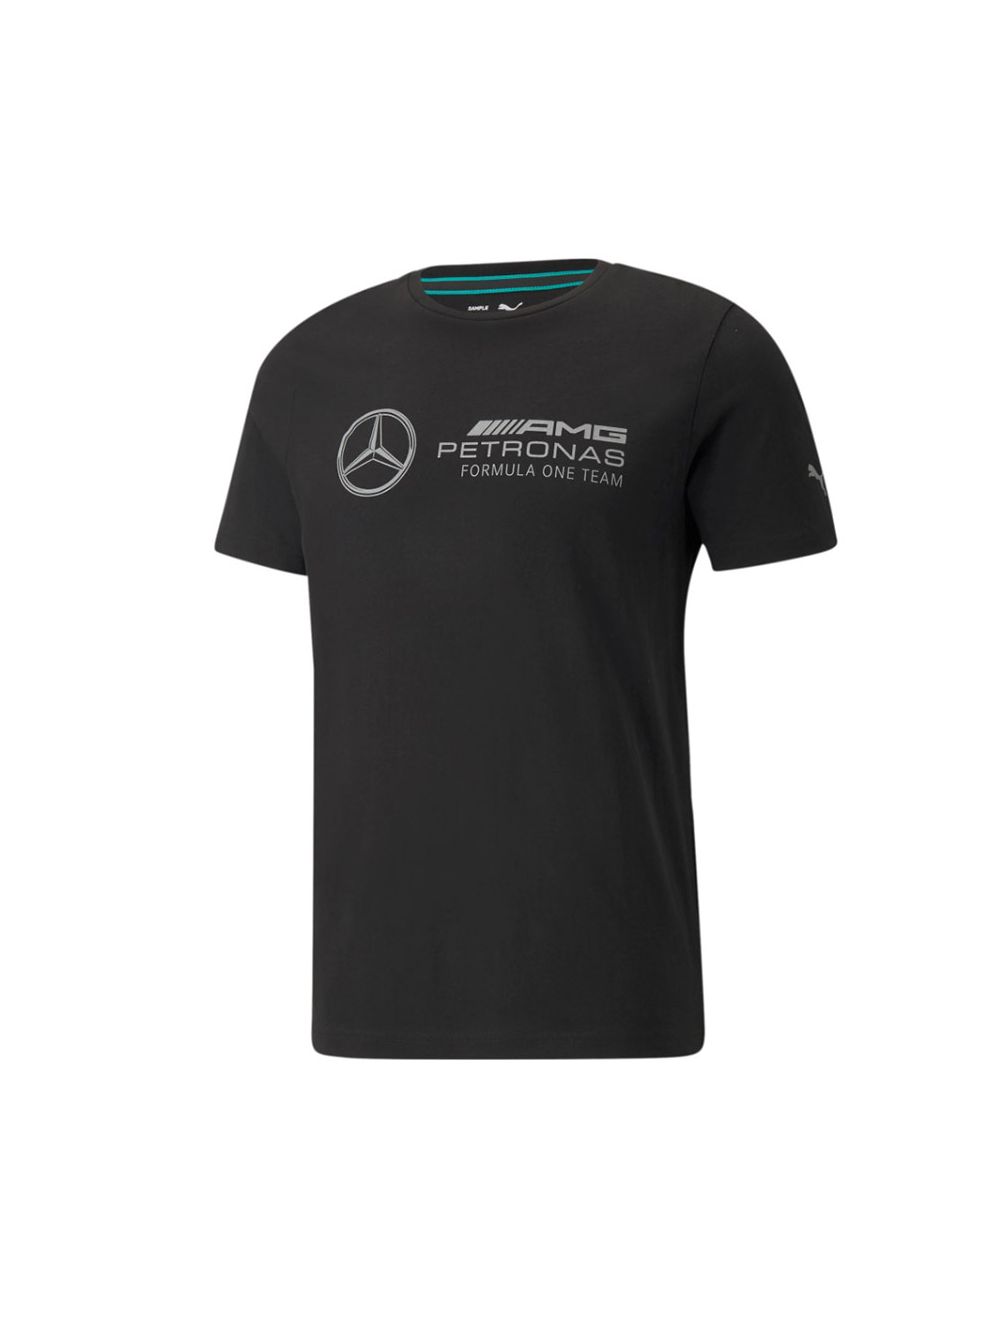 Puma Mercedes F1 Logo T-shirt Mens Black Black